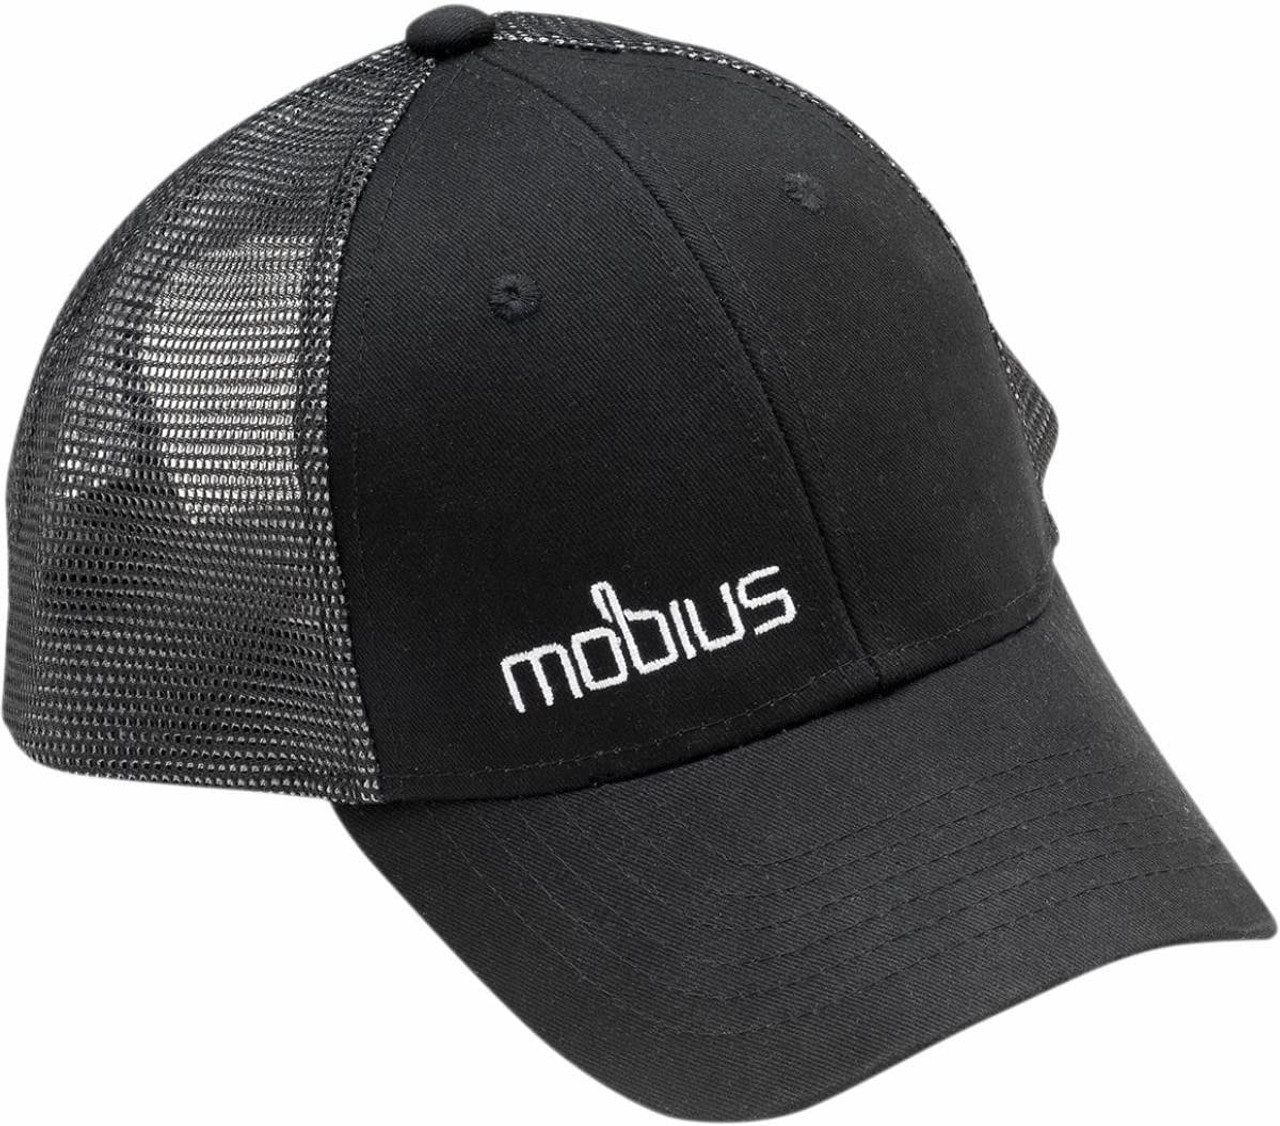 Mobius 4110200